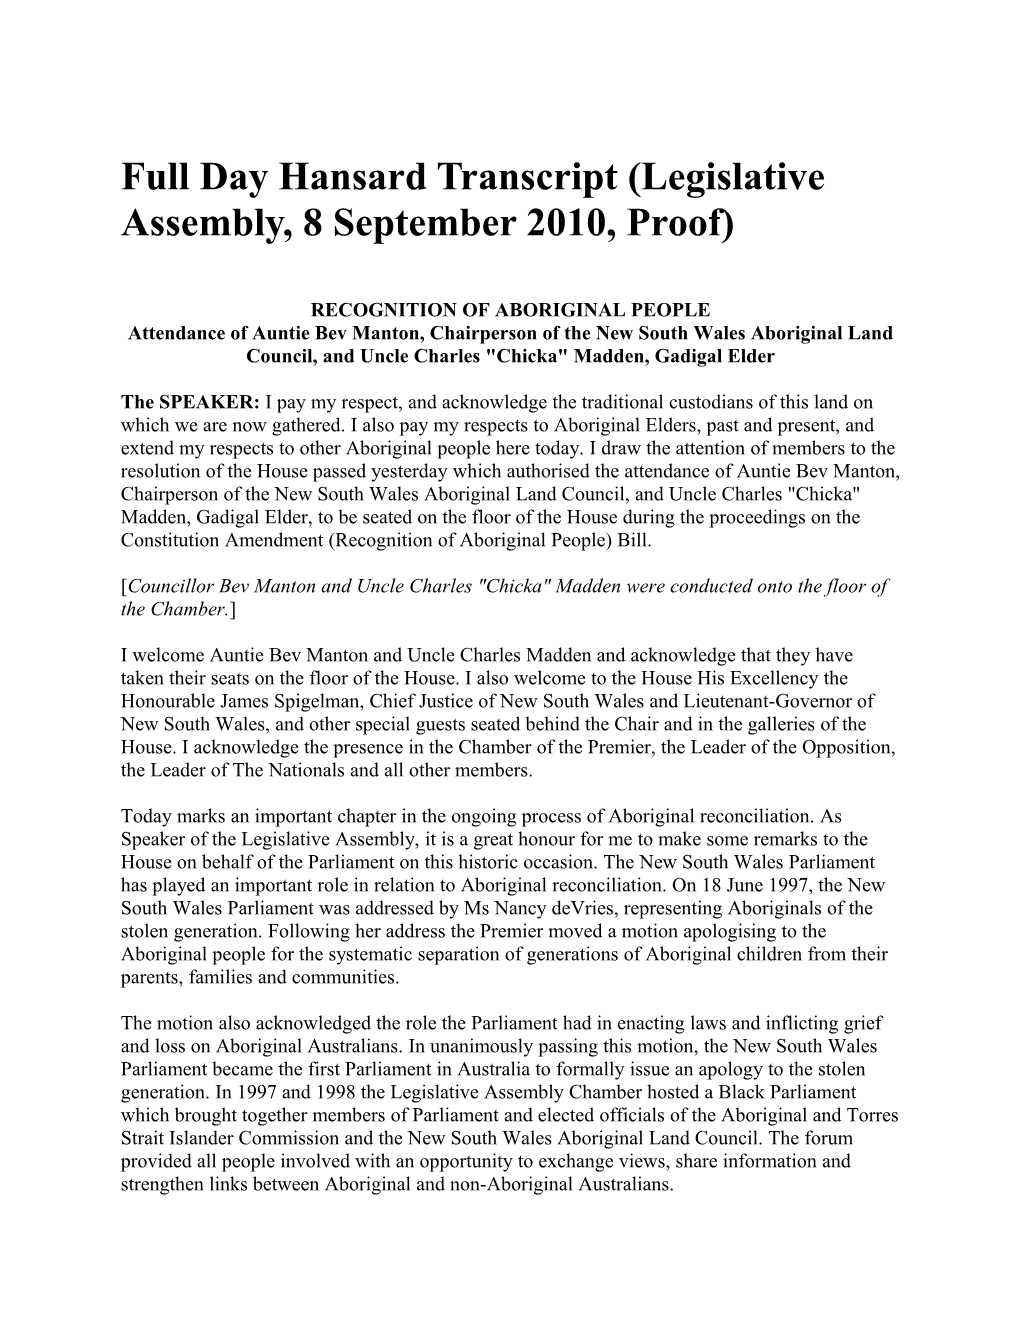 Full Day Hansard Transcript (Legislative Assembly, 8 September 2010, Proof)